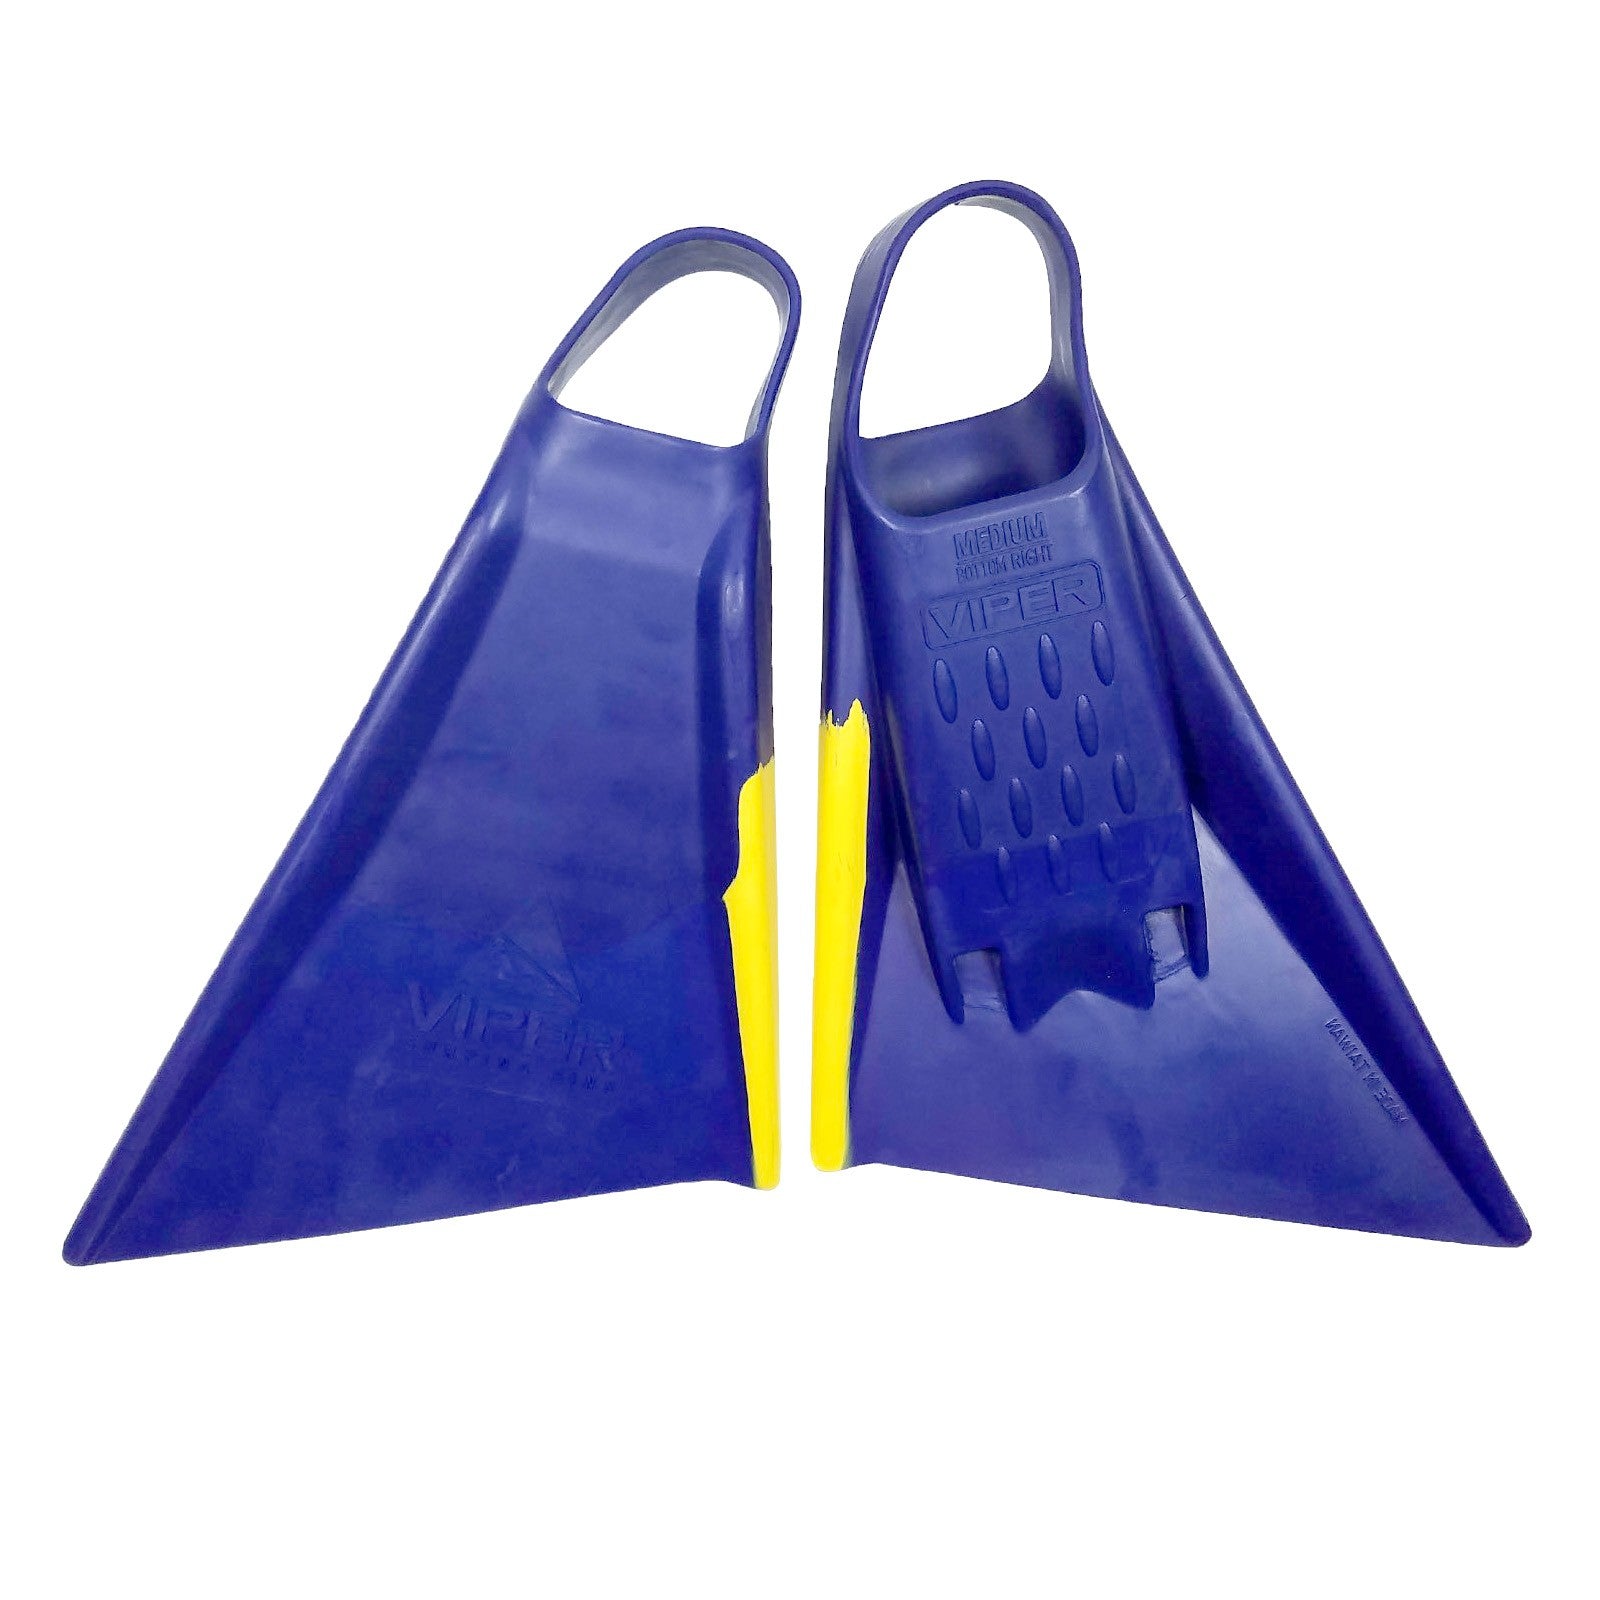 MS VIPER Delta 2.0 - Palmes bodyboard - Blue / Yellow